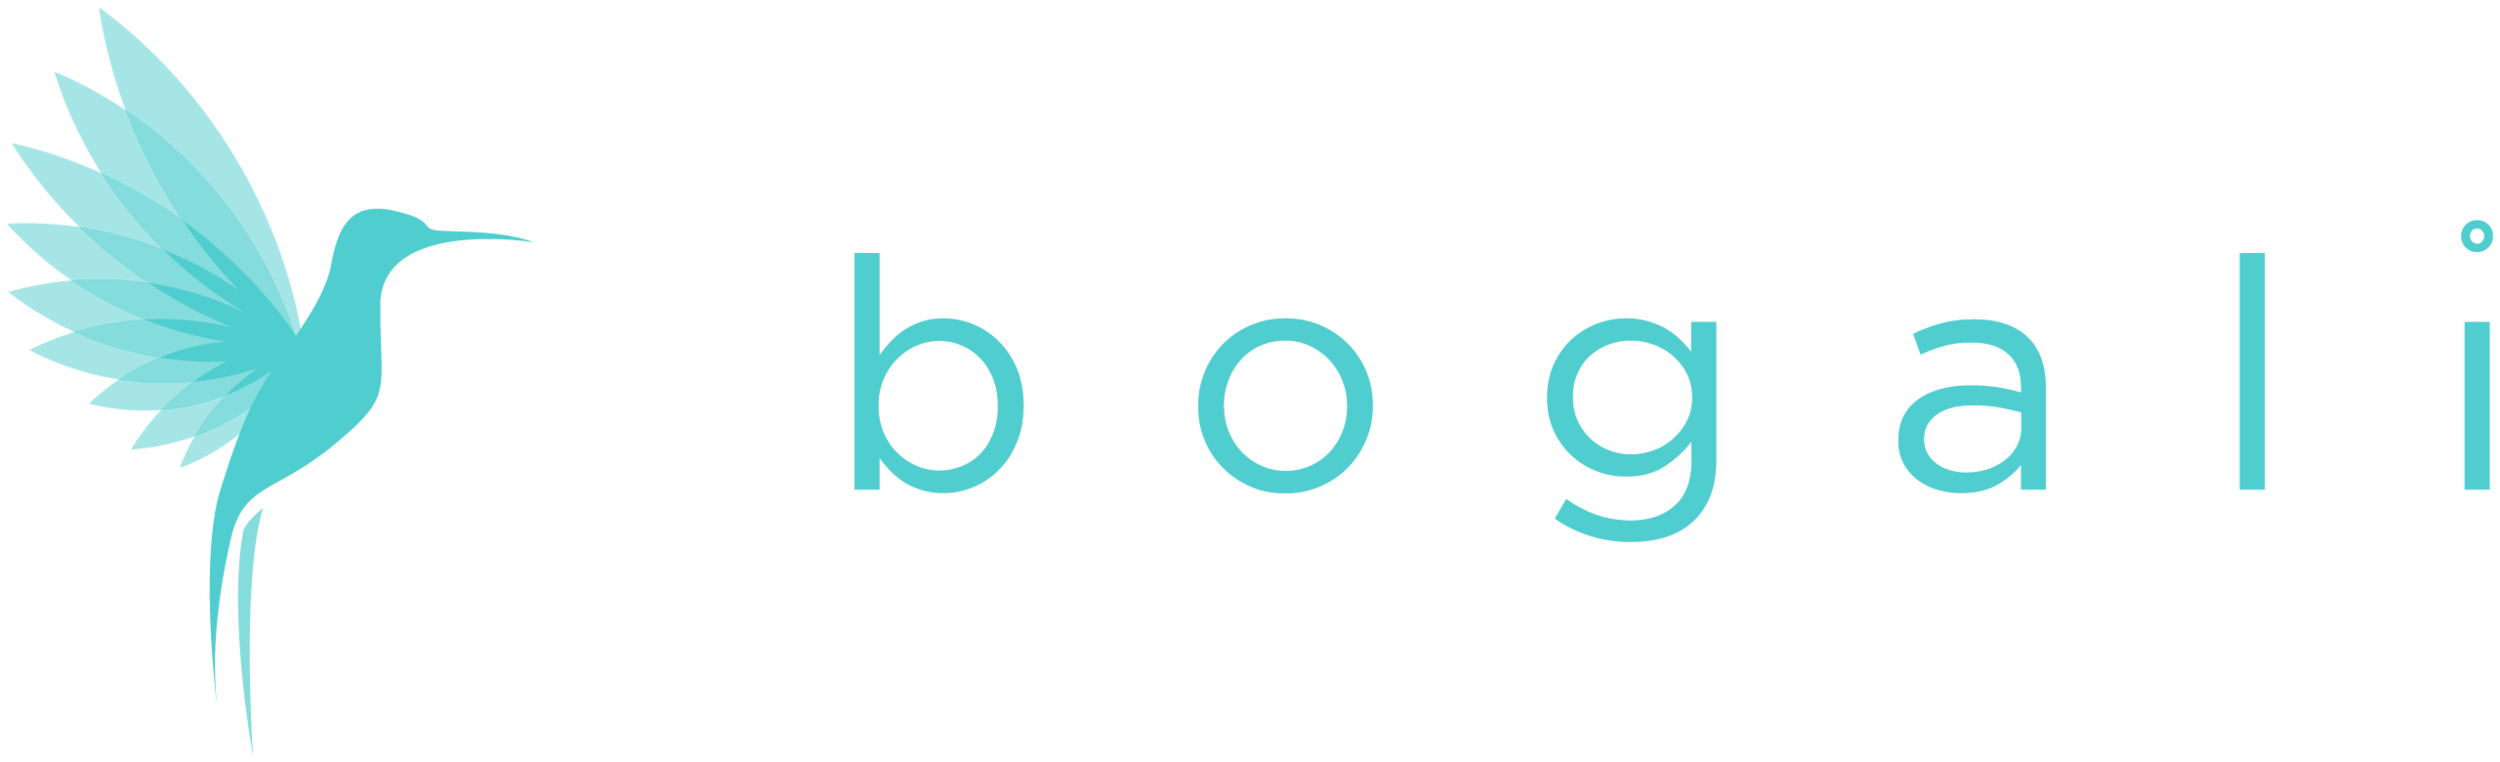 Bogali-Logo-White copy.png